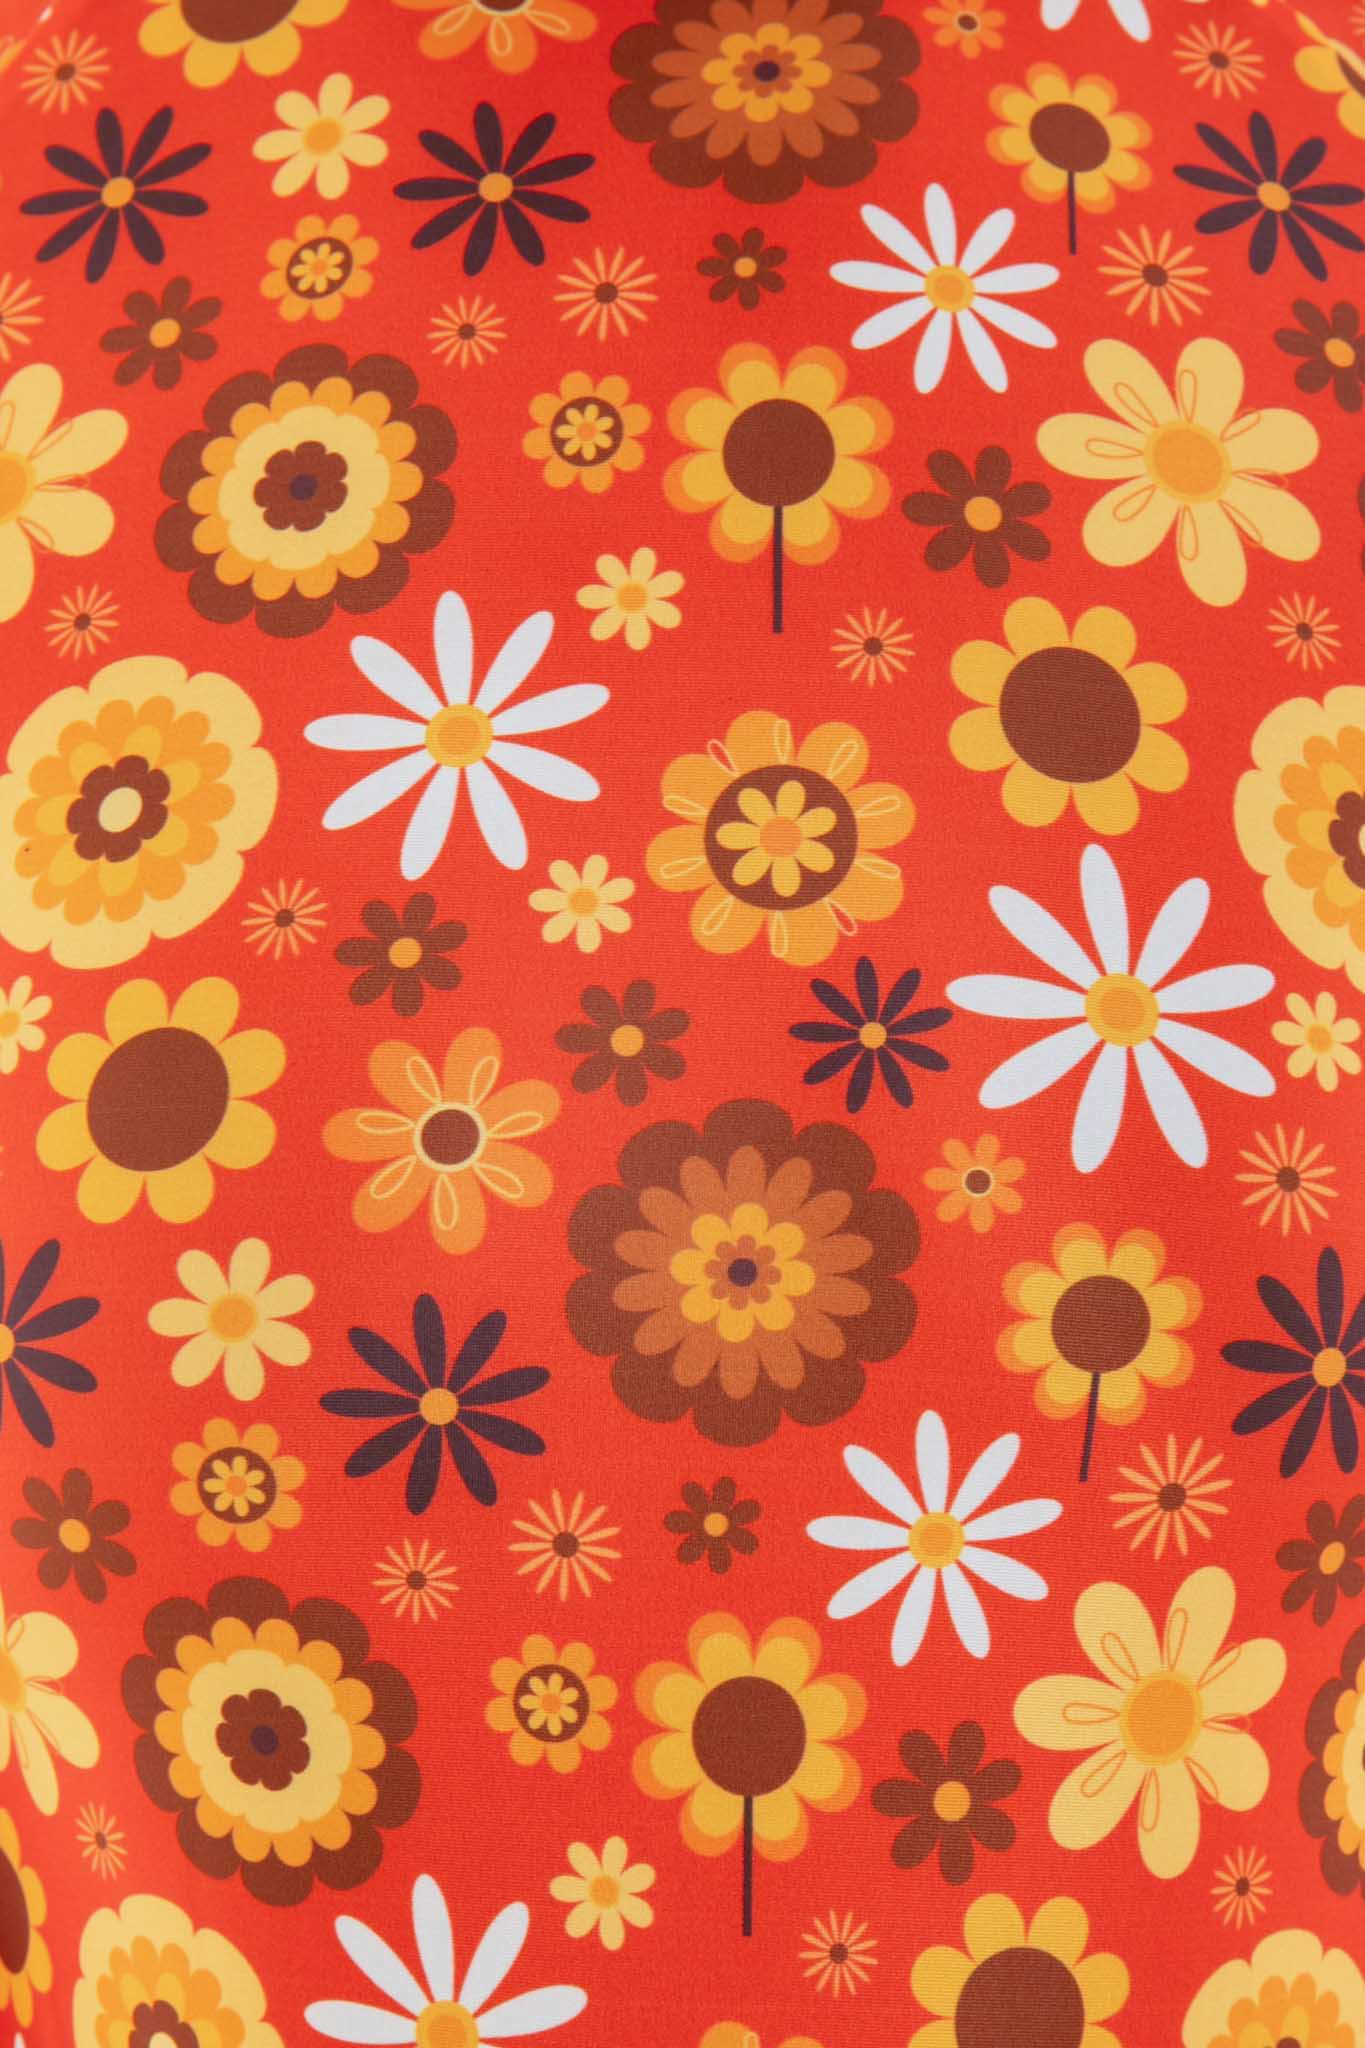 Close-up of the orange retro floral print